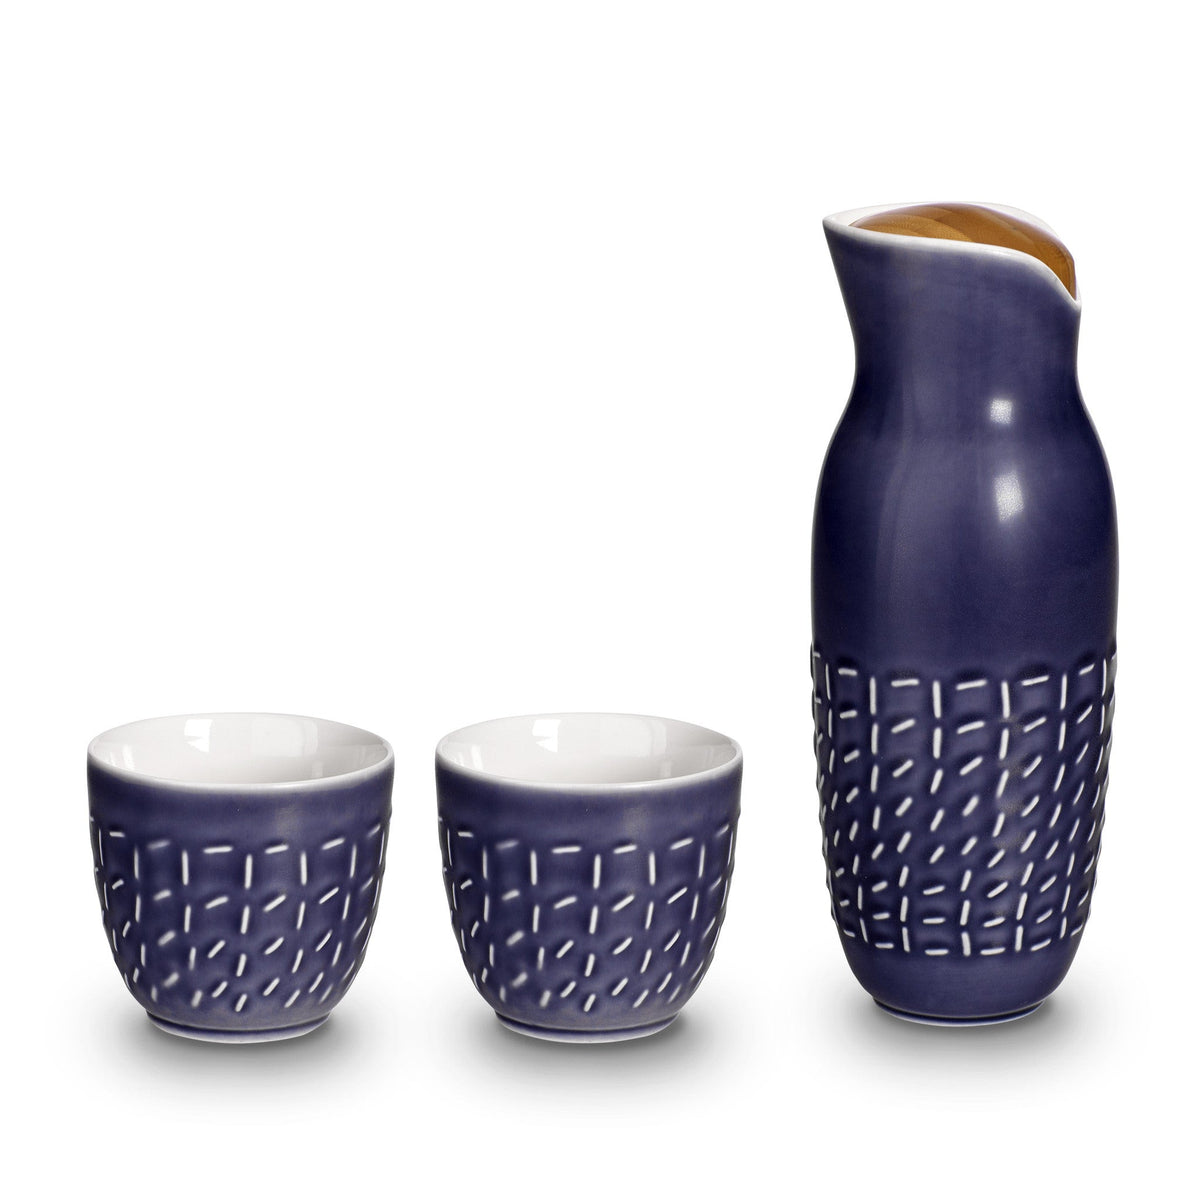 Footprint Carafe Set with Tea Cups (no Handles), Carafe 31oz, Cup 10 oz, Ceramics, Bamboo-2